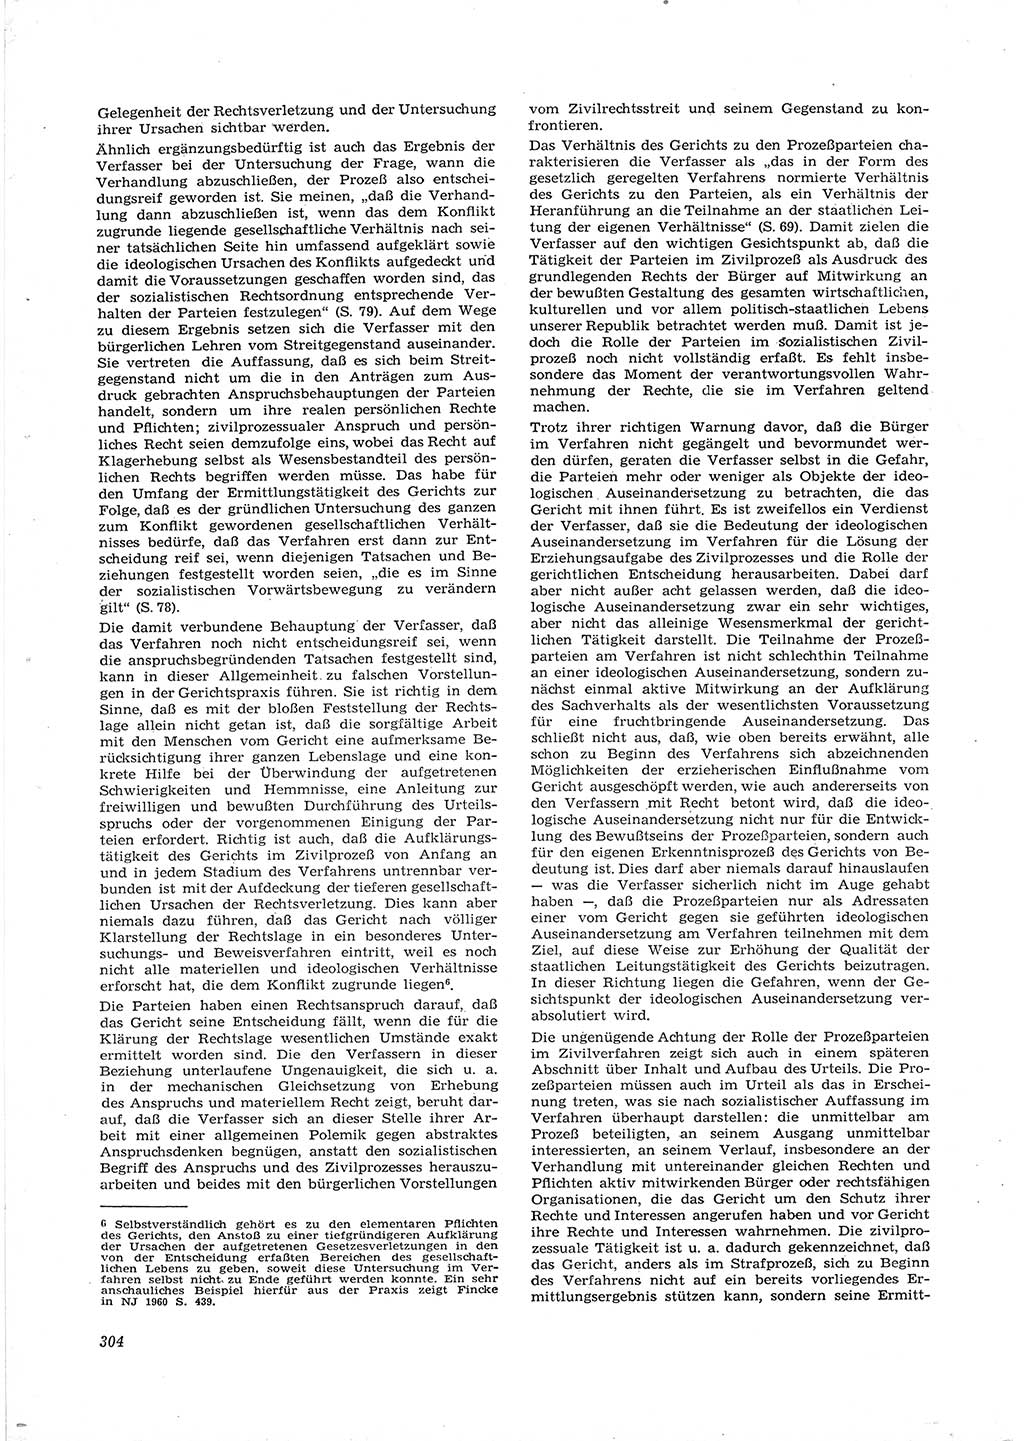 Neue Justiz (NJ), Zeitschrift für Recht und Rechtswissenschaft [Deutsche Demokratische Republik (DDR)], 16. Jahrgang 1962, Seite 304 (NJ DDR 1962, S. 304)